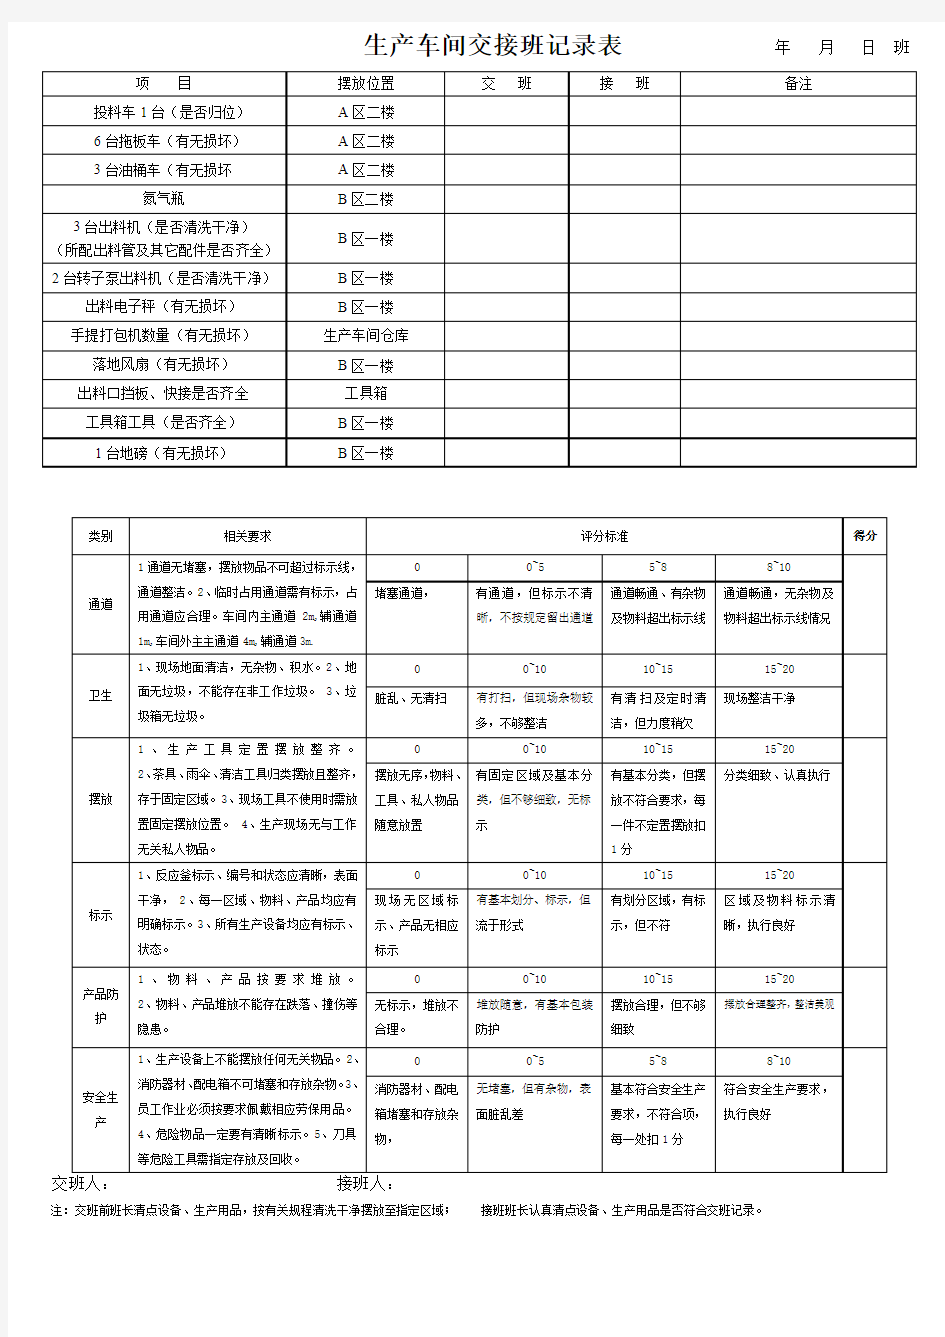 生产车间交接班记录表-1 (1)